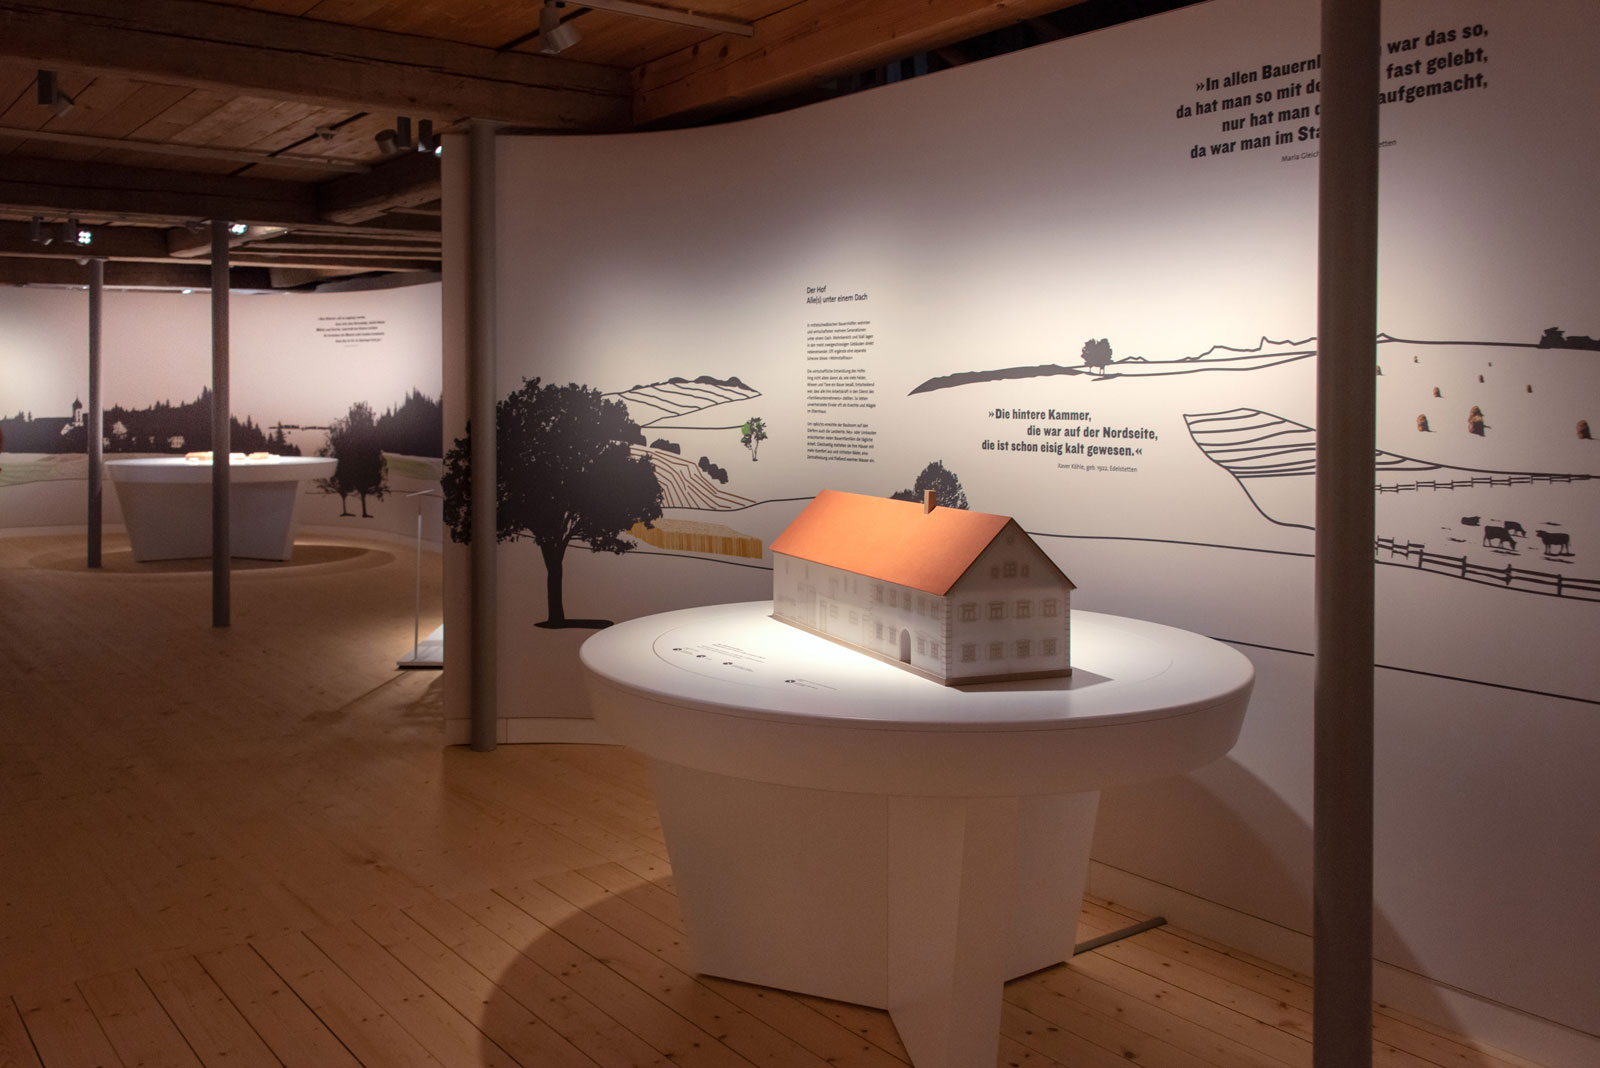 Das Referenzbild für Ausstellungsgestaltung aus der Dauerausstellung Tradition und Umbruch zeigt ein barrierefreies interaktives Modell aus der Eingangsinszenierung.